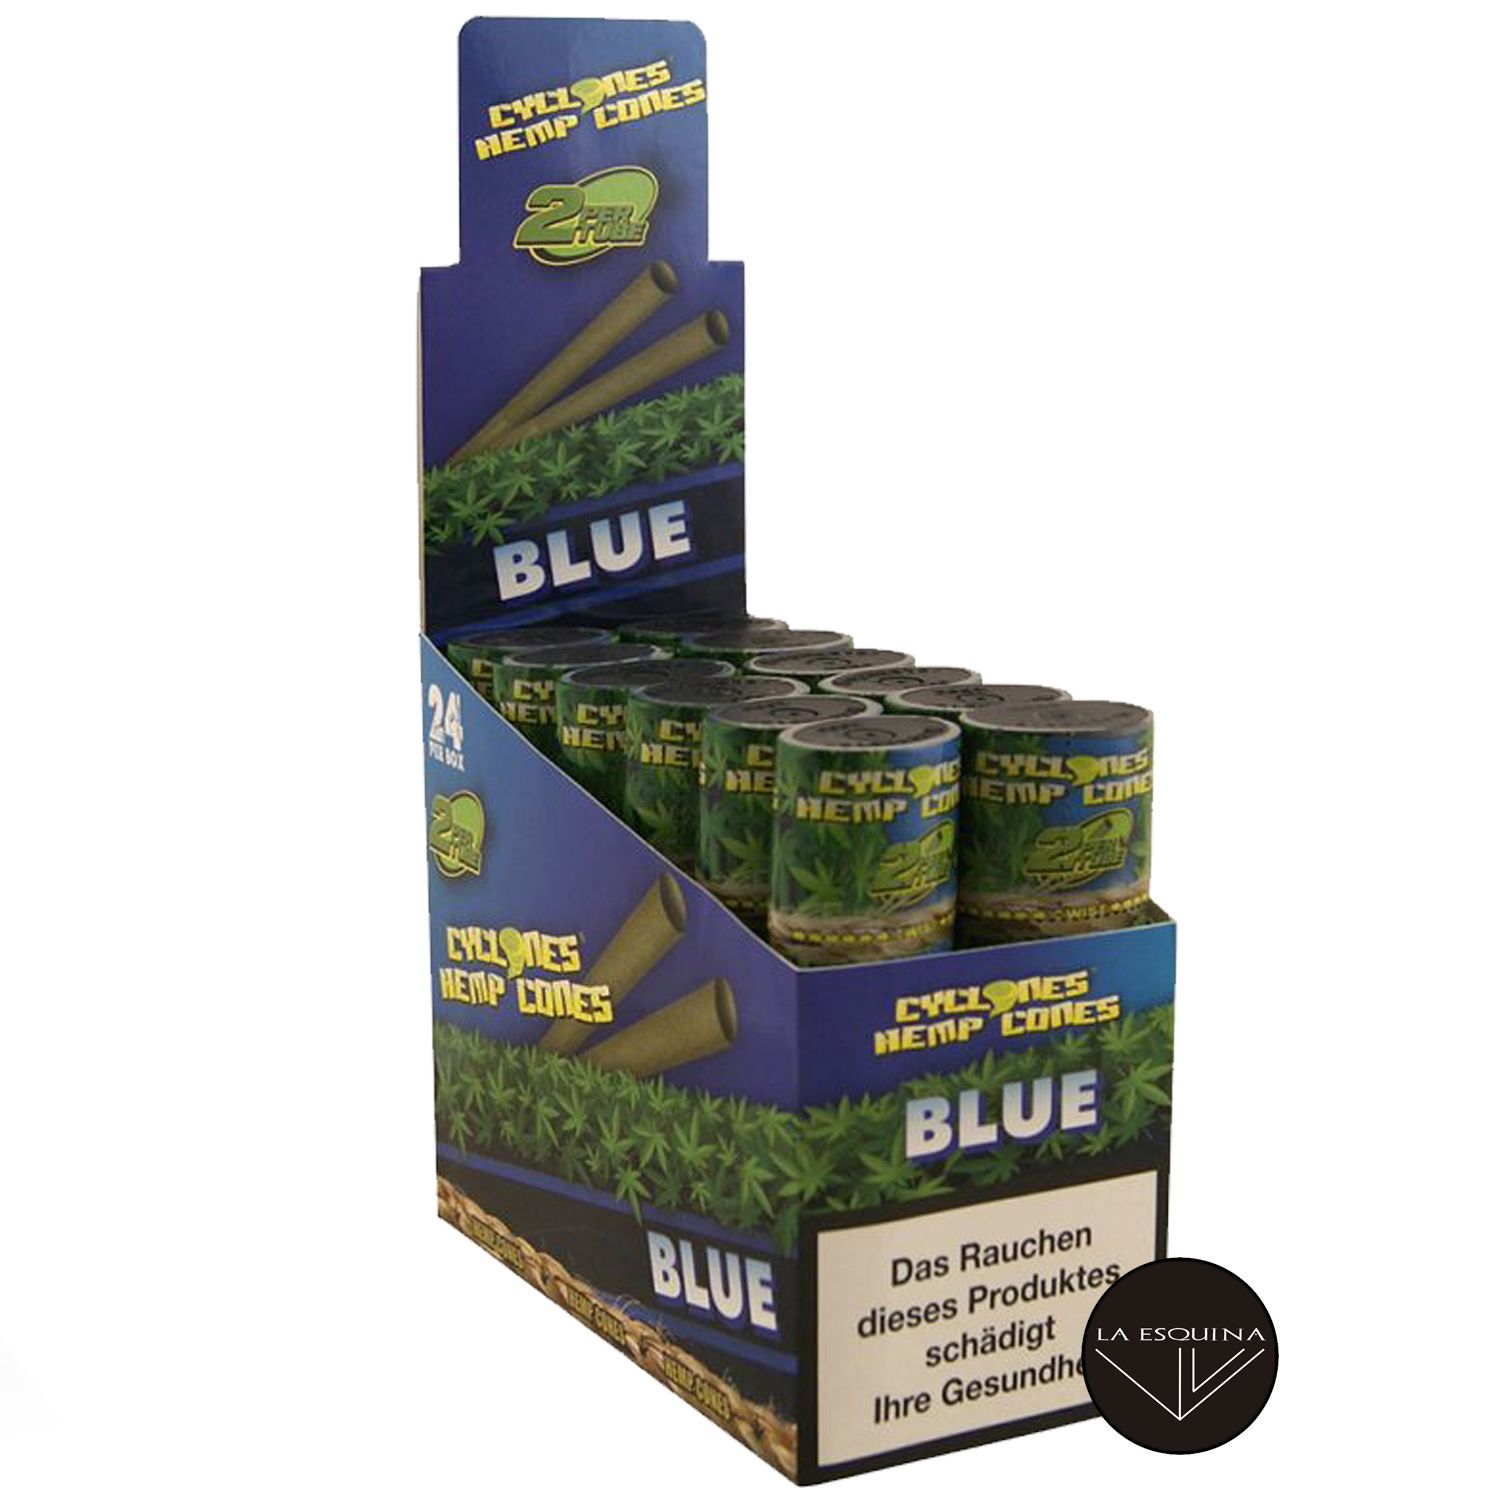 Caja Papel CYCLONES Hemp Blue sabor Arandanos . Conos preliados fabricados en cáñamo, la mejor elección para fumar un blunt. Caja de 12 estuches con 2 blunts cada uno